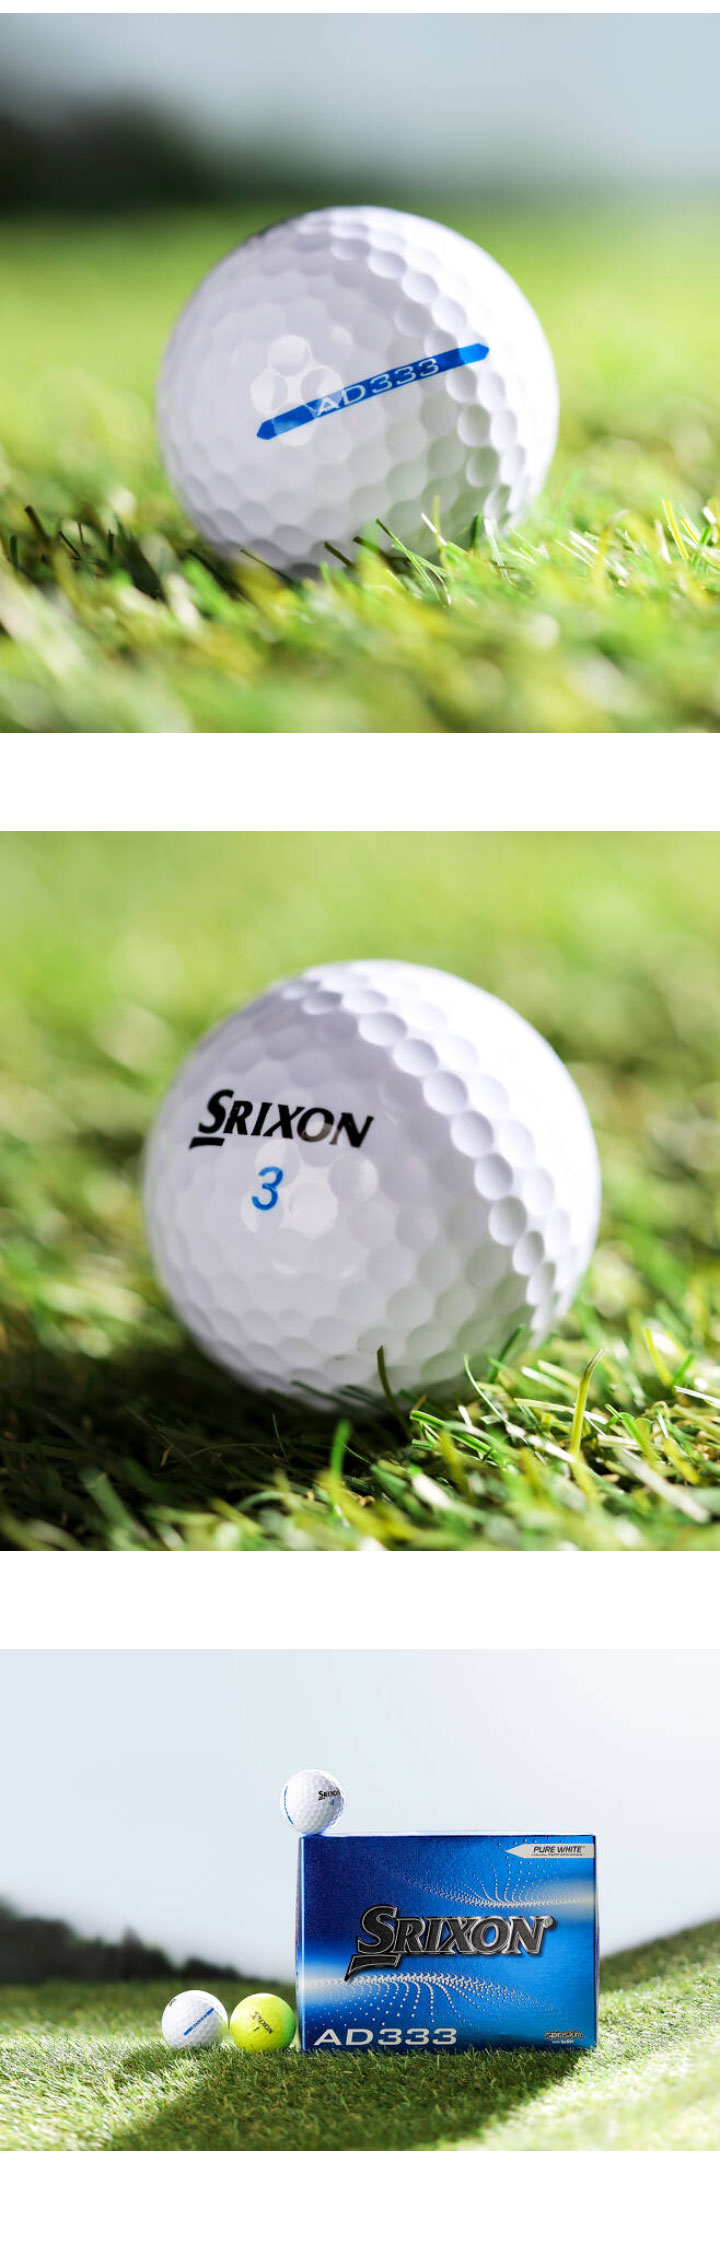 dunlop_srixon_ad333_golf_ball_23_18.jpg